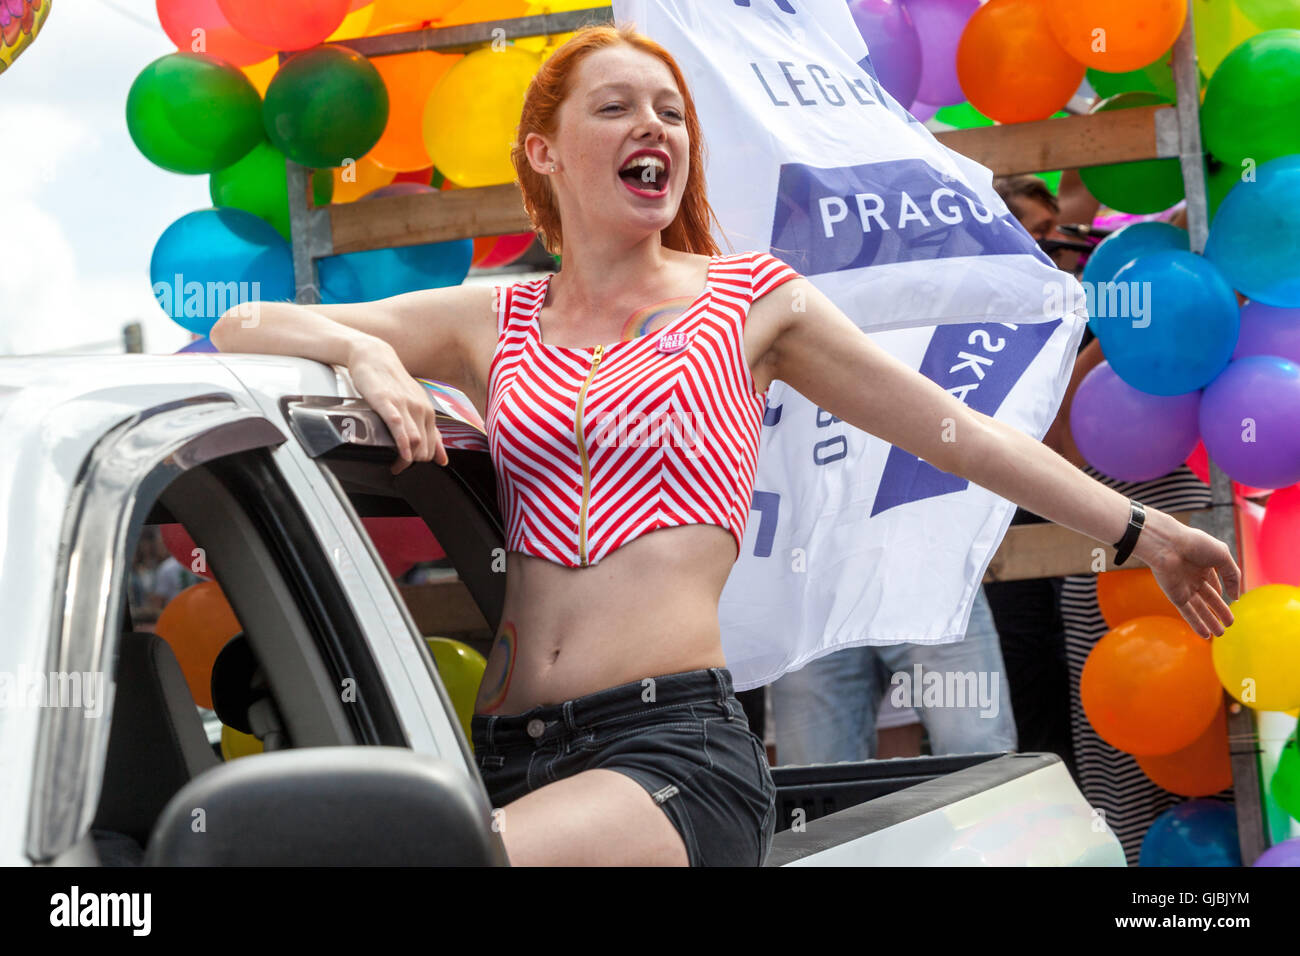 Junge rothaarige Mädchen in der LGBT-Parade Pride Prag Frau Tschechische Republik Stockfoto